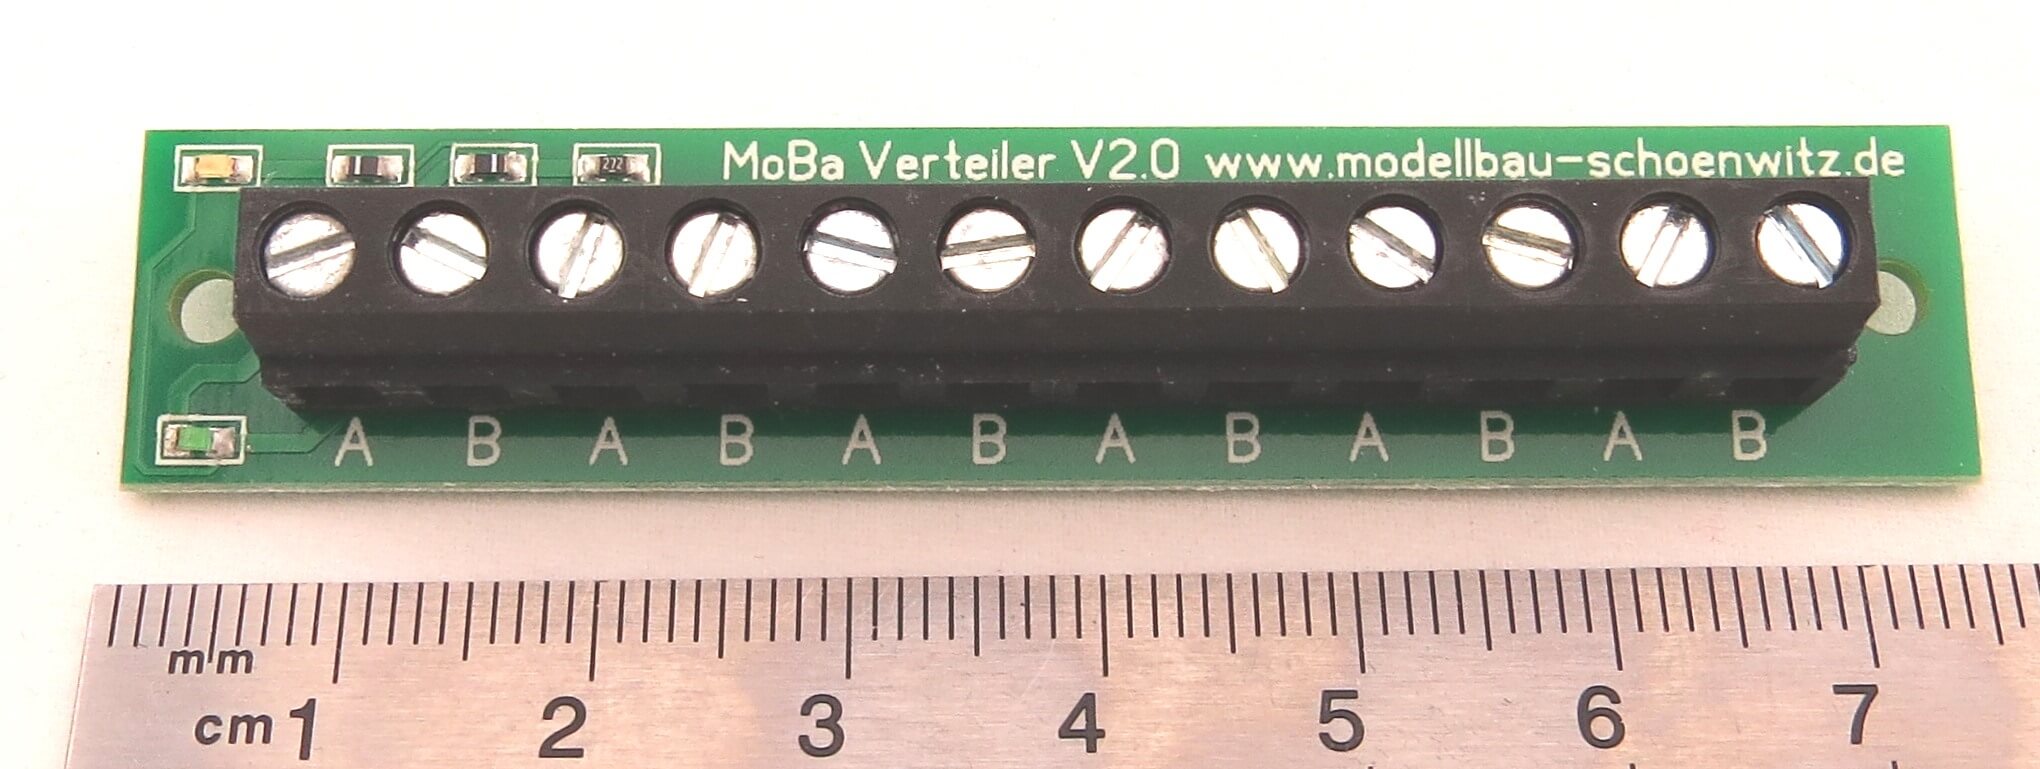 Stromverteiler MoBa Verteiler V2 mit LEDs